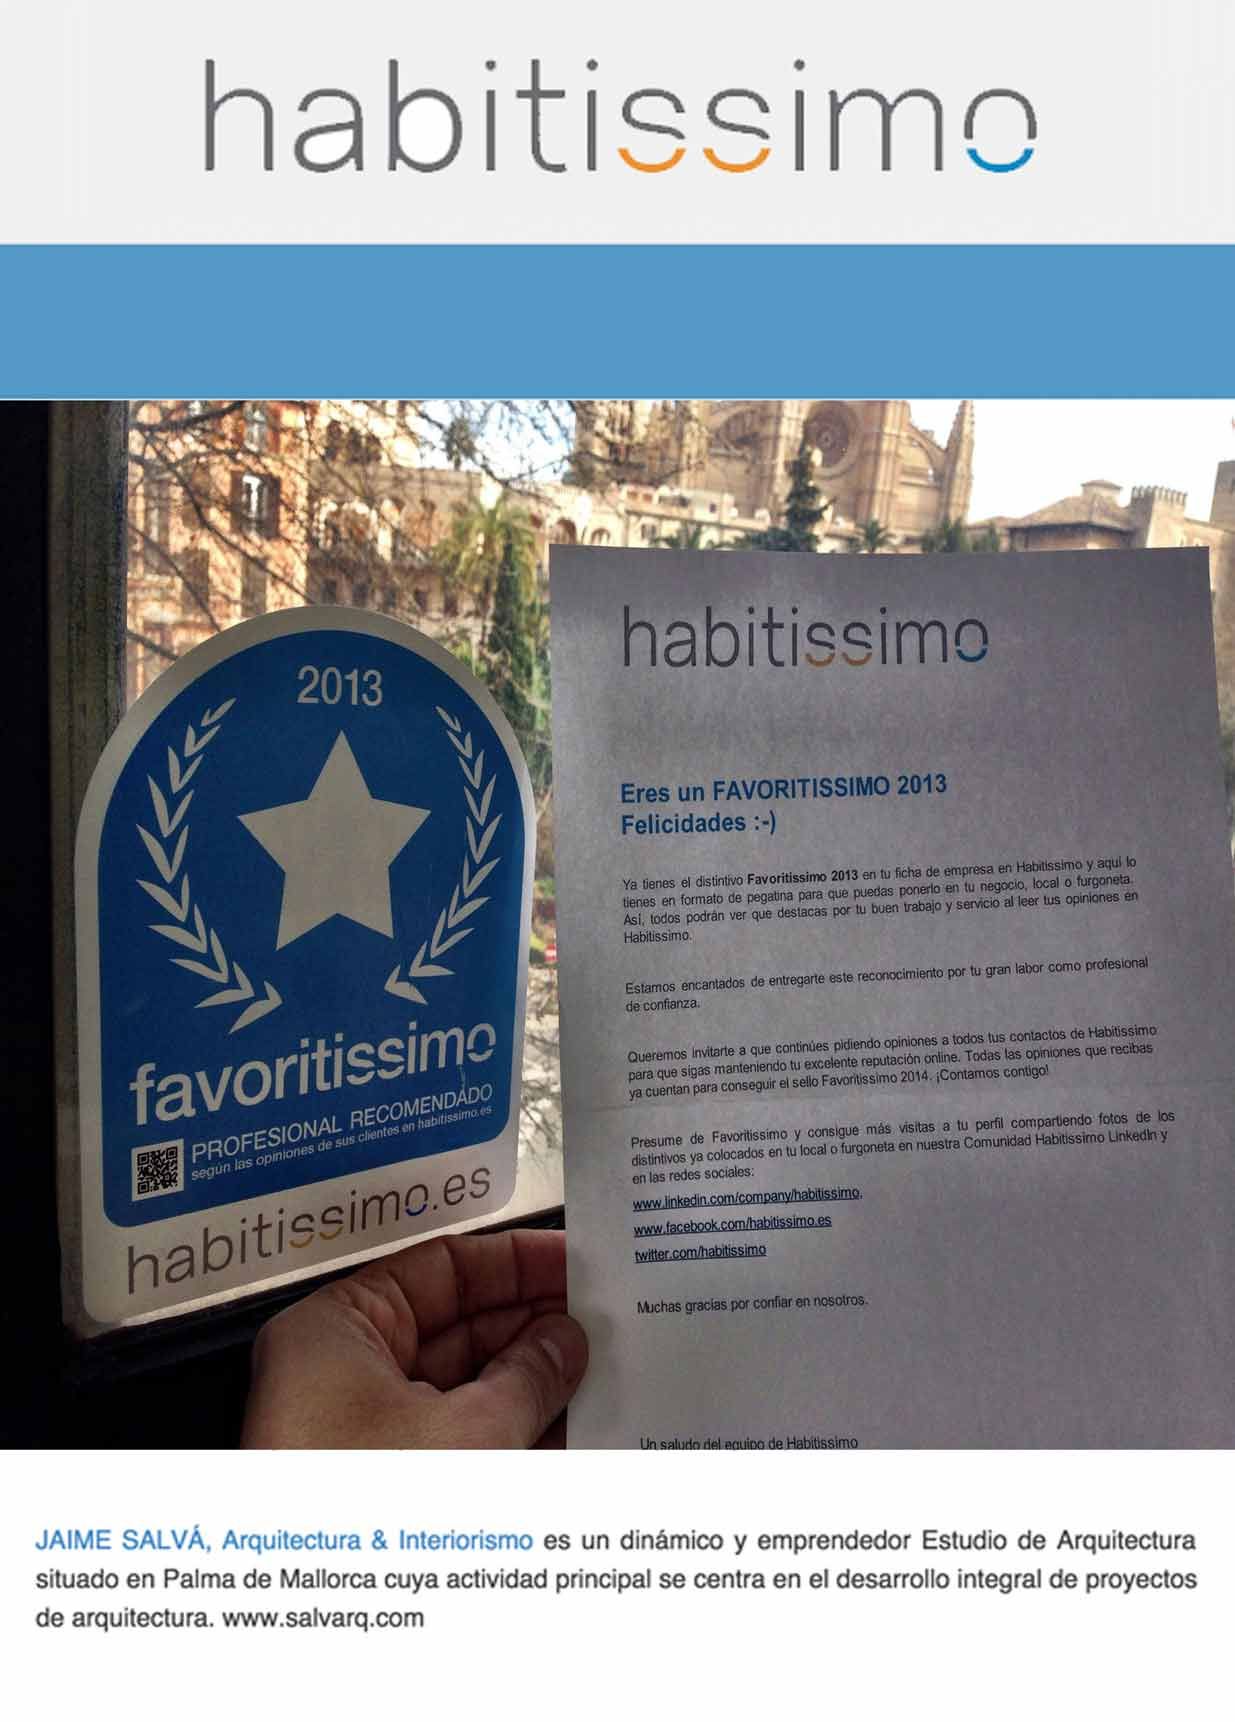 Premio “FAVORITISSIMO 2013” por “HABITISSIMO”